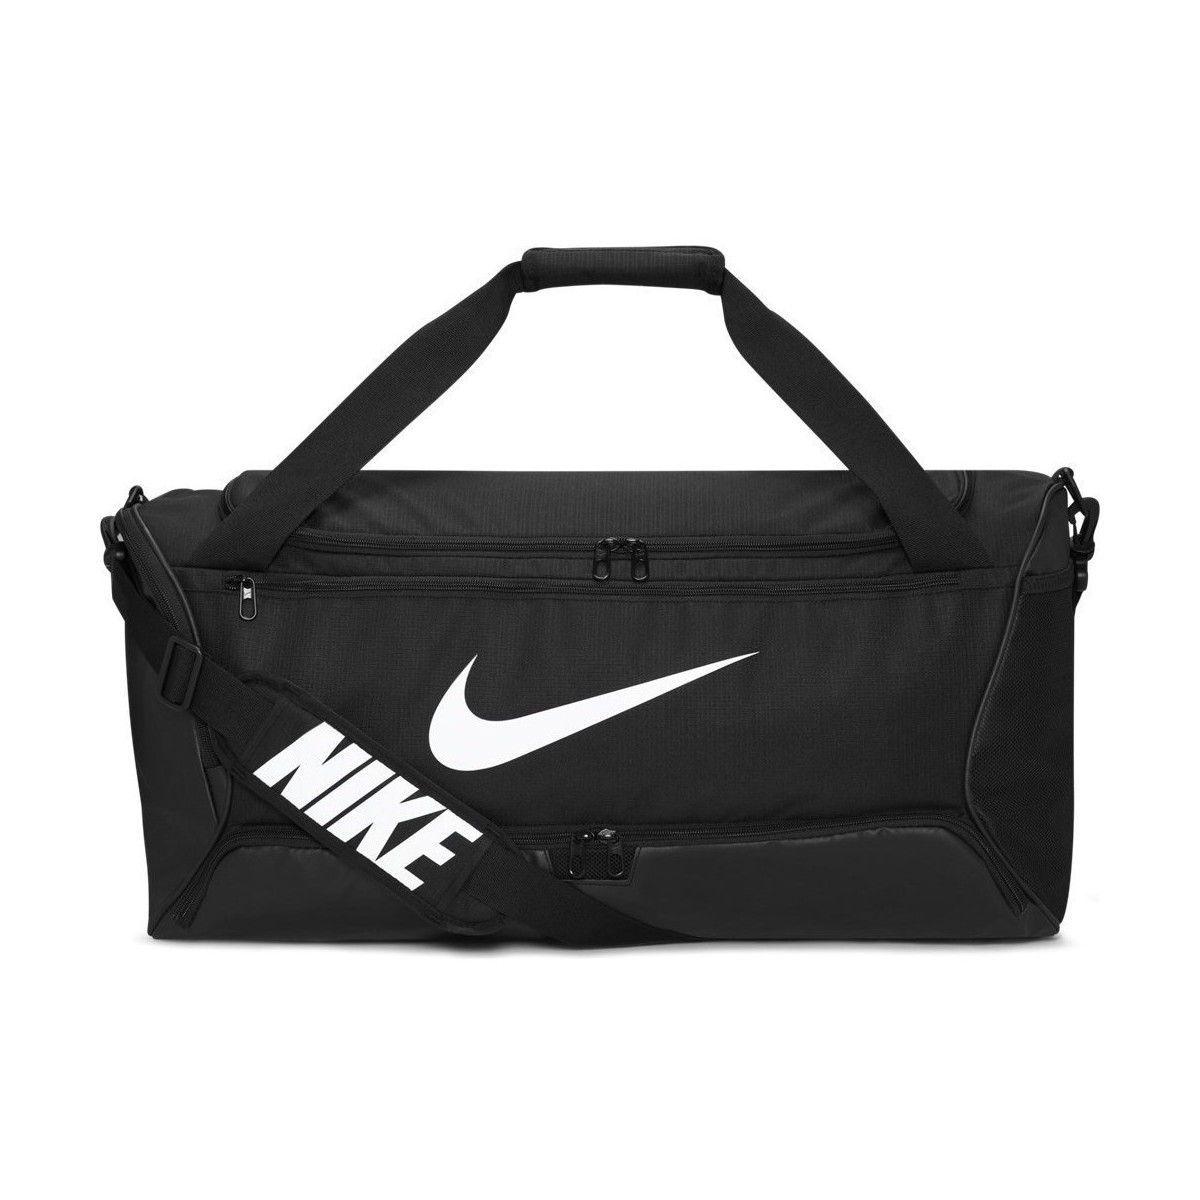 Taška Sportovní tašky Nike Brasilia 95 Černá